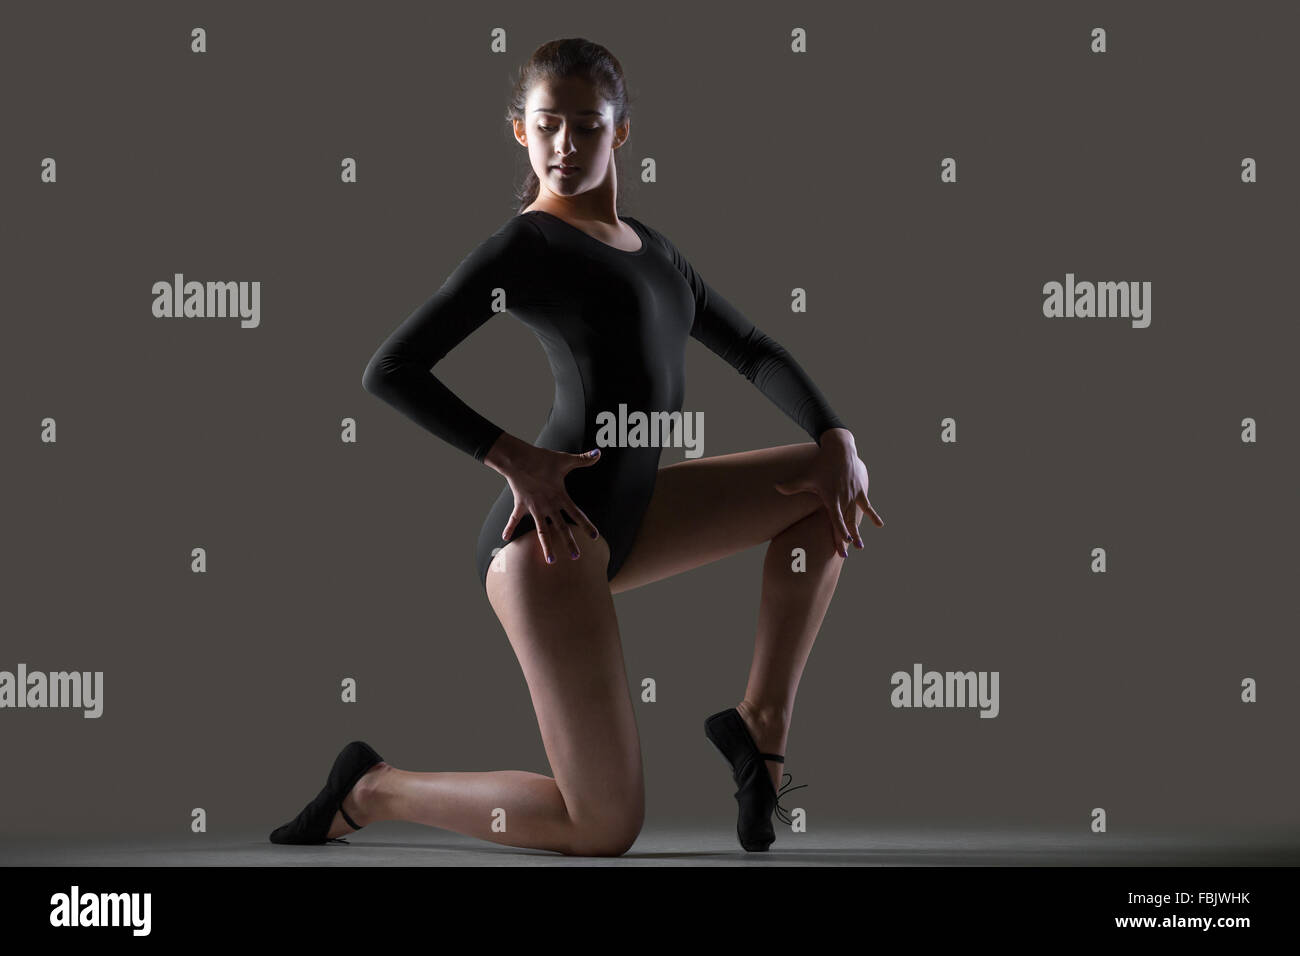 Porträt der schönen anmutigen jungen Tänzerin Frau im schwarzen Trikot, Sport, tanzen, Ganzkörperansicht, Studio, dunkler Hintergrund Stockfoto